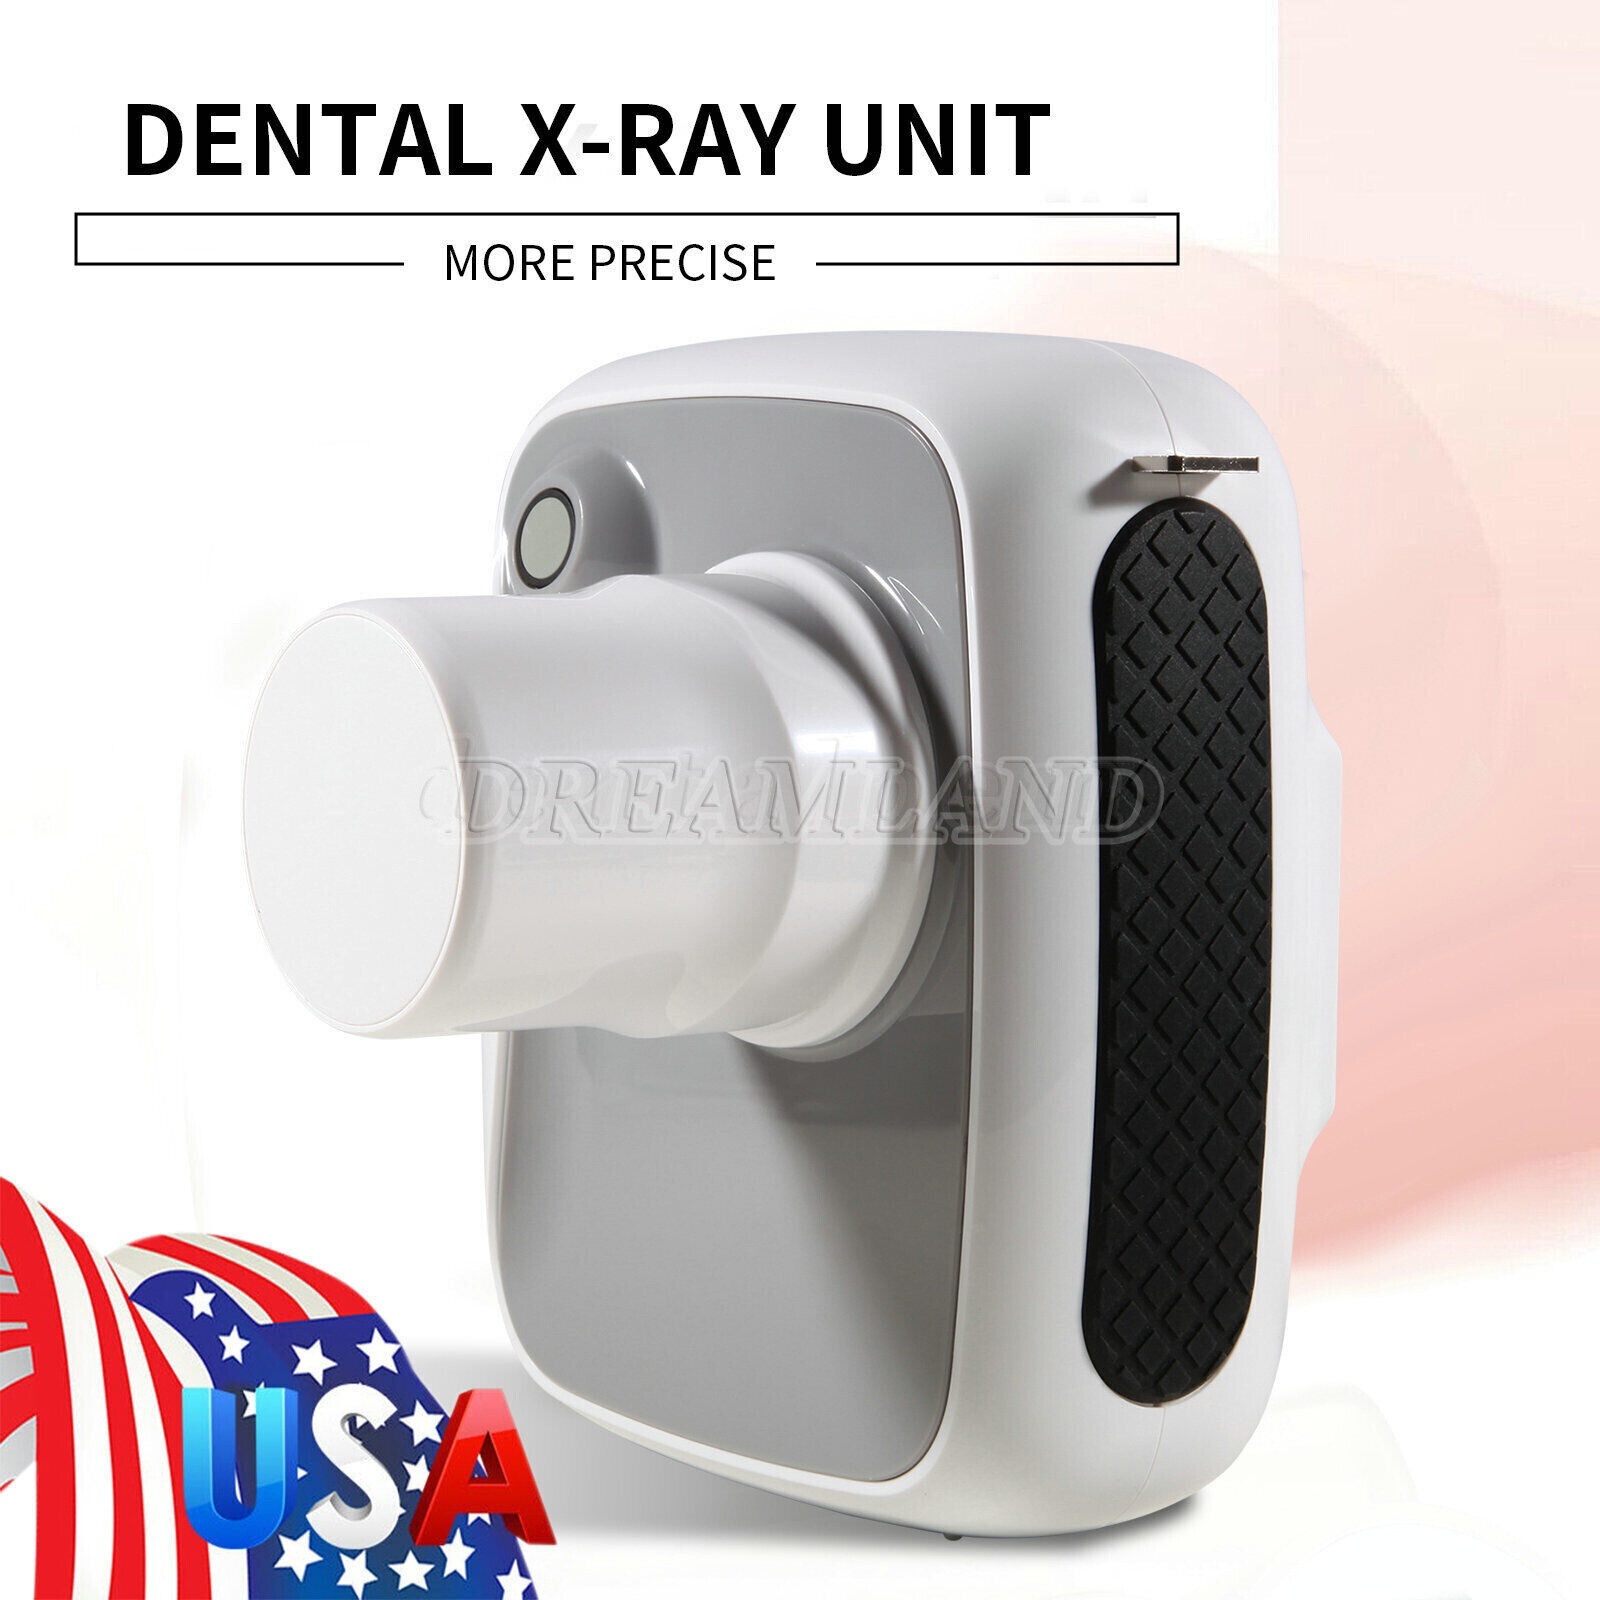 Equipo de rayos X dental Máquina de rayos X de imagen digital X ray Machine Unbranded Does Not Apply - фотография #7